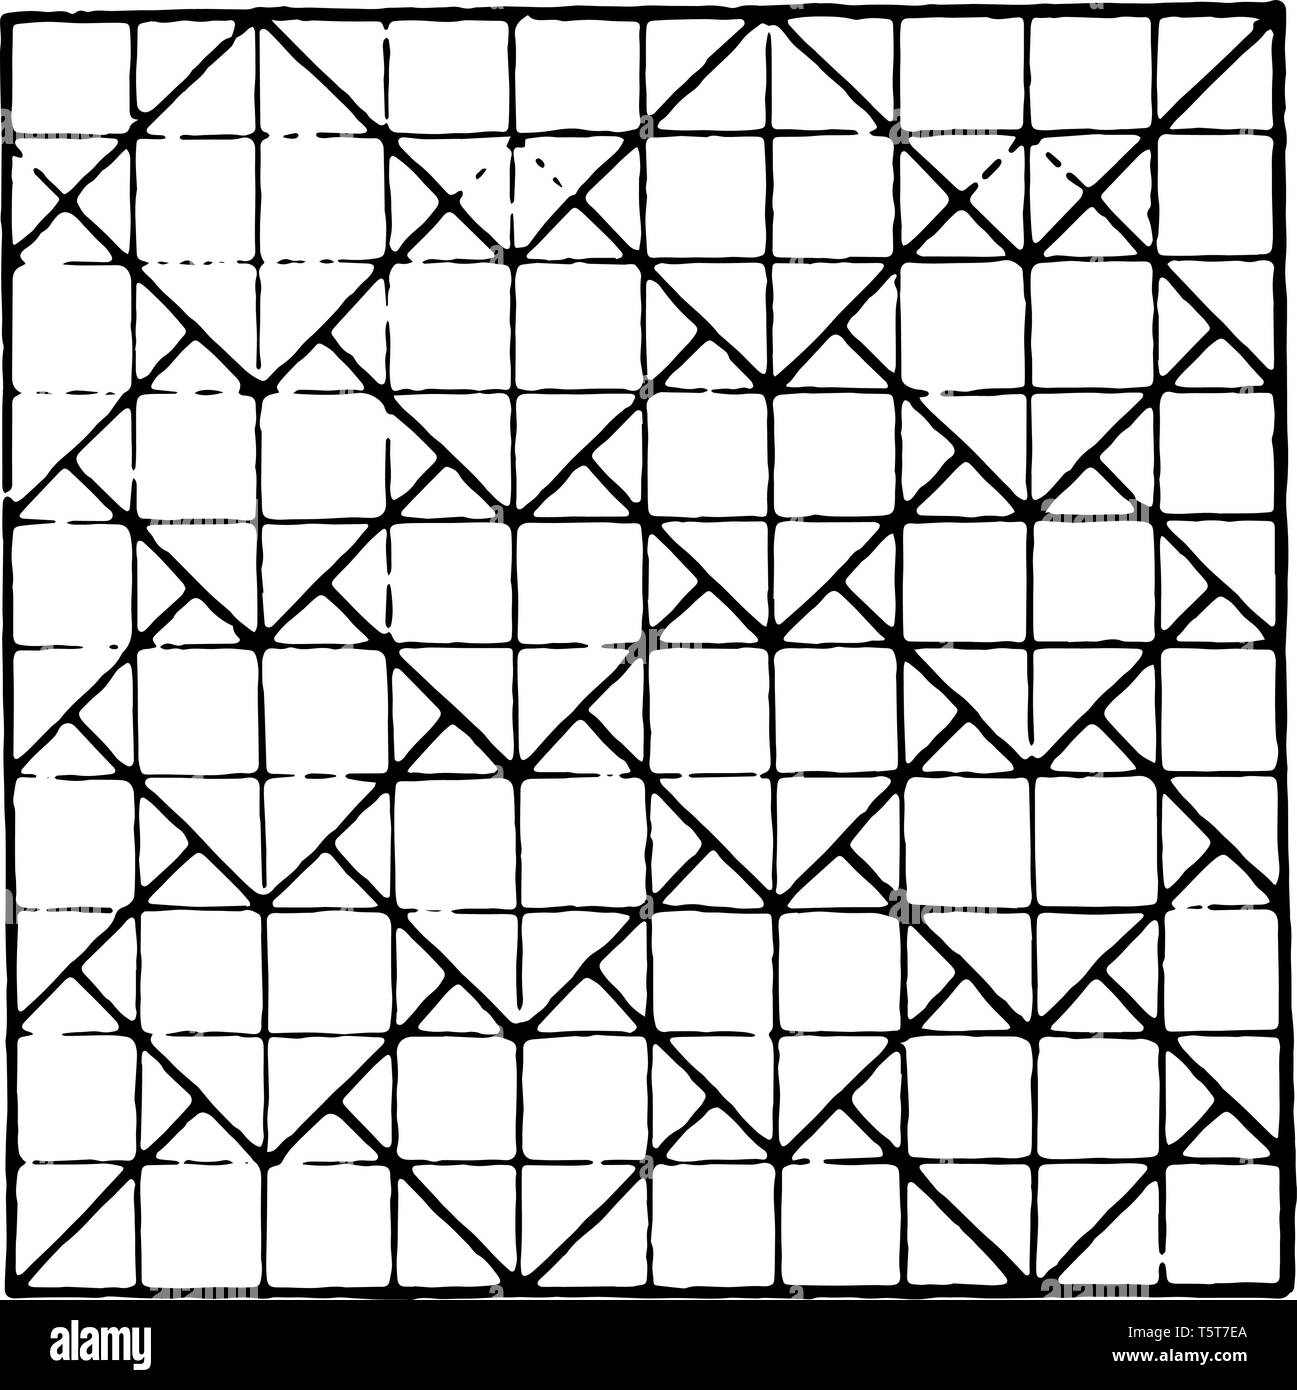 Das Bild zeigt die schöne Tessellierung Design zusammen mit der wiederholten Design Pattern, indem Sie die Mittelpunkte der einzelnen kleinen Platz. Ein Quadrat hat Stock Vektor